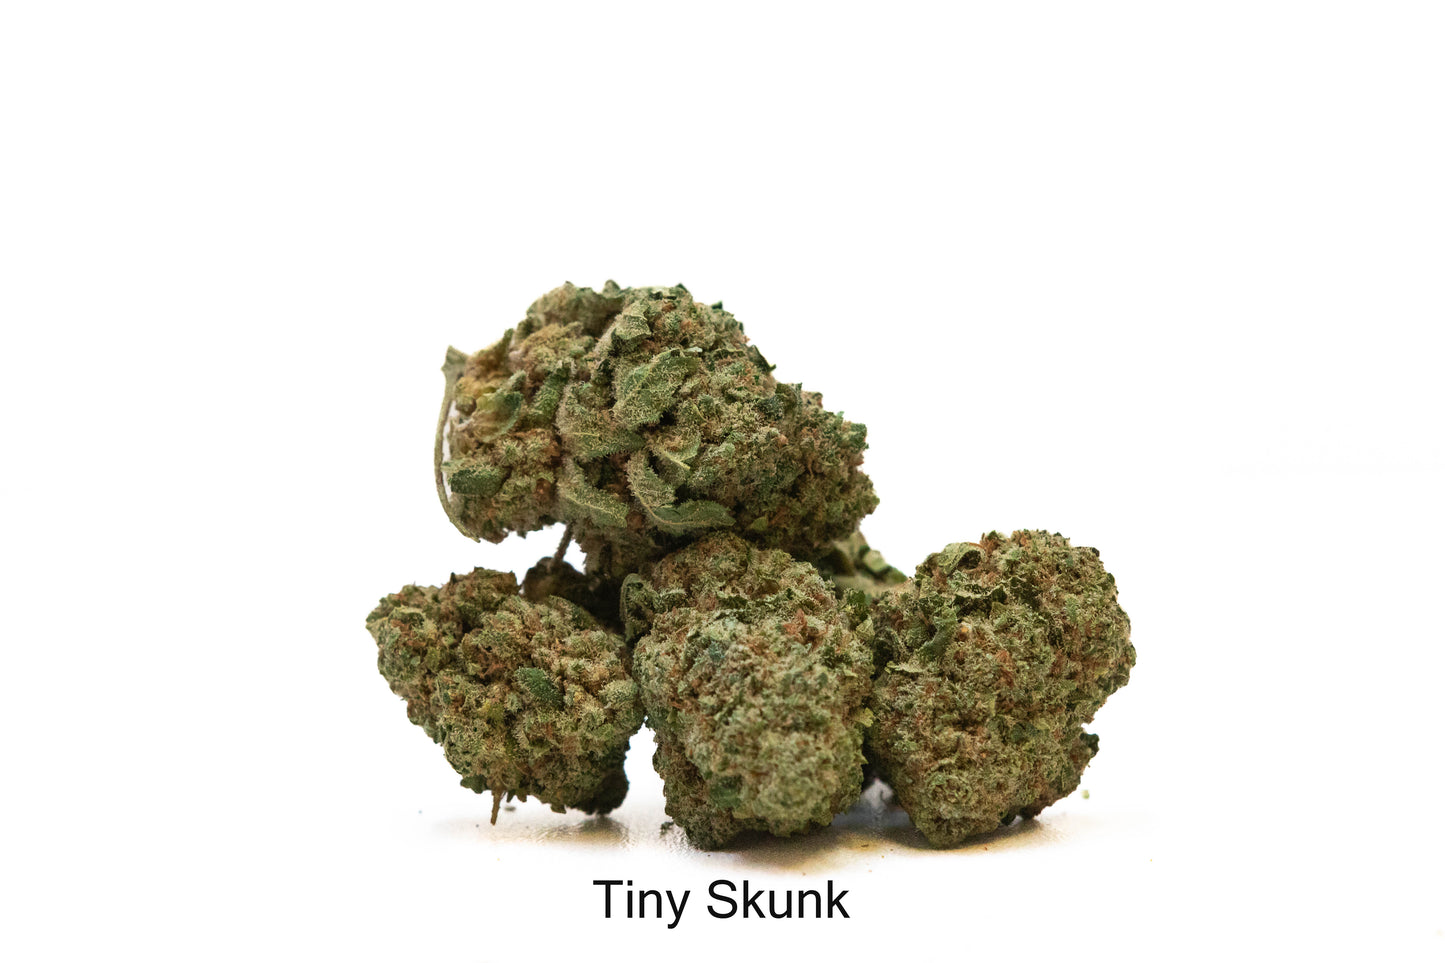 Tiny Skunk